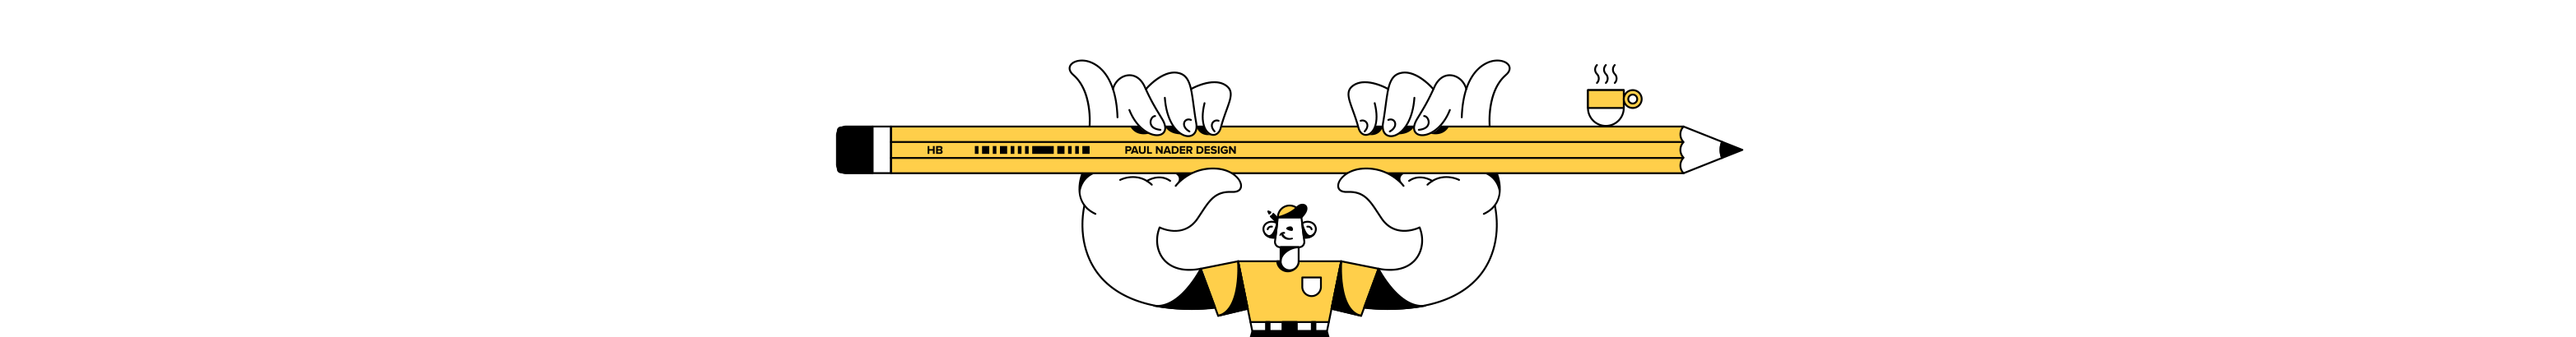 Paul Naders profilbanner